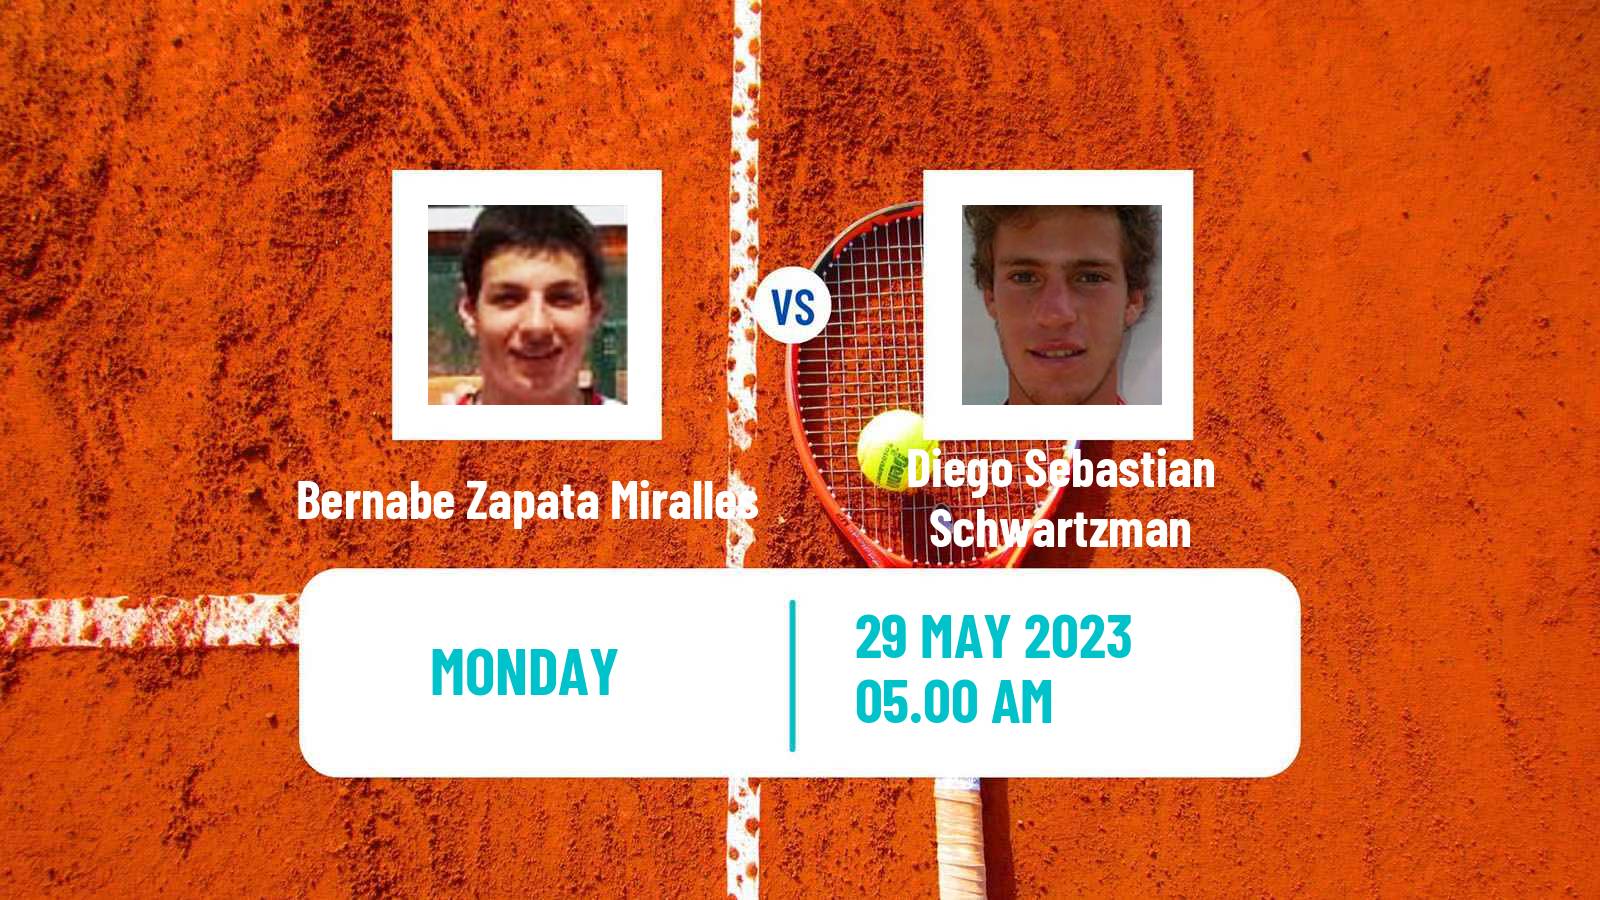 Tennis ATP Roland Garros Bernabe Zapata Miralles - Diego Sebastian Schwartzman